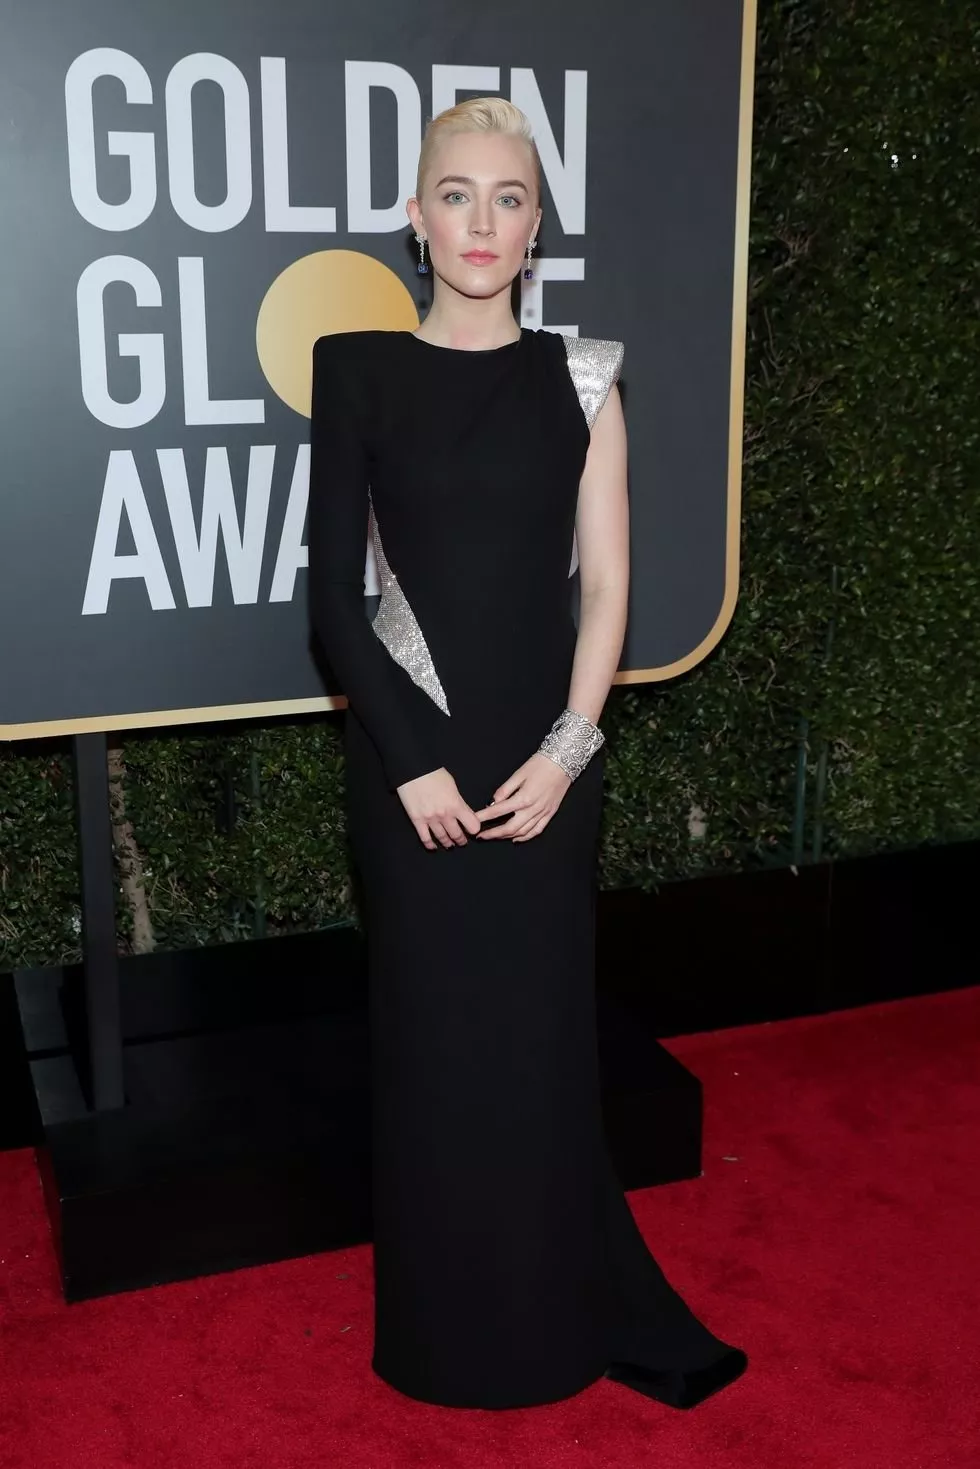 إطلالات النجمات خلال حفل Golden Globes Awards 2018: ارتدين اللّون الأسود بهدف قضية إنسانية